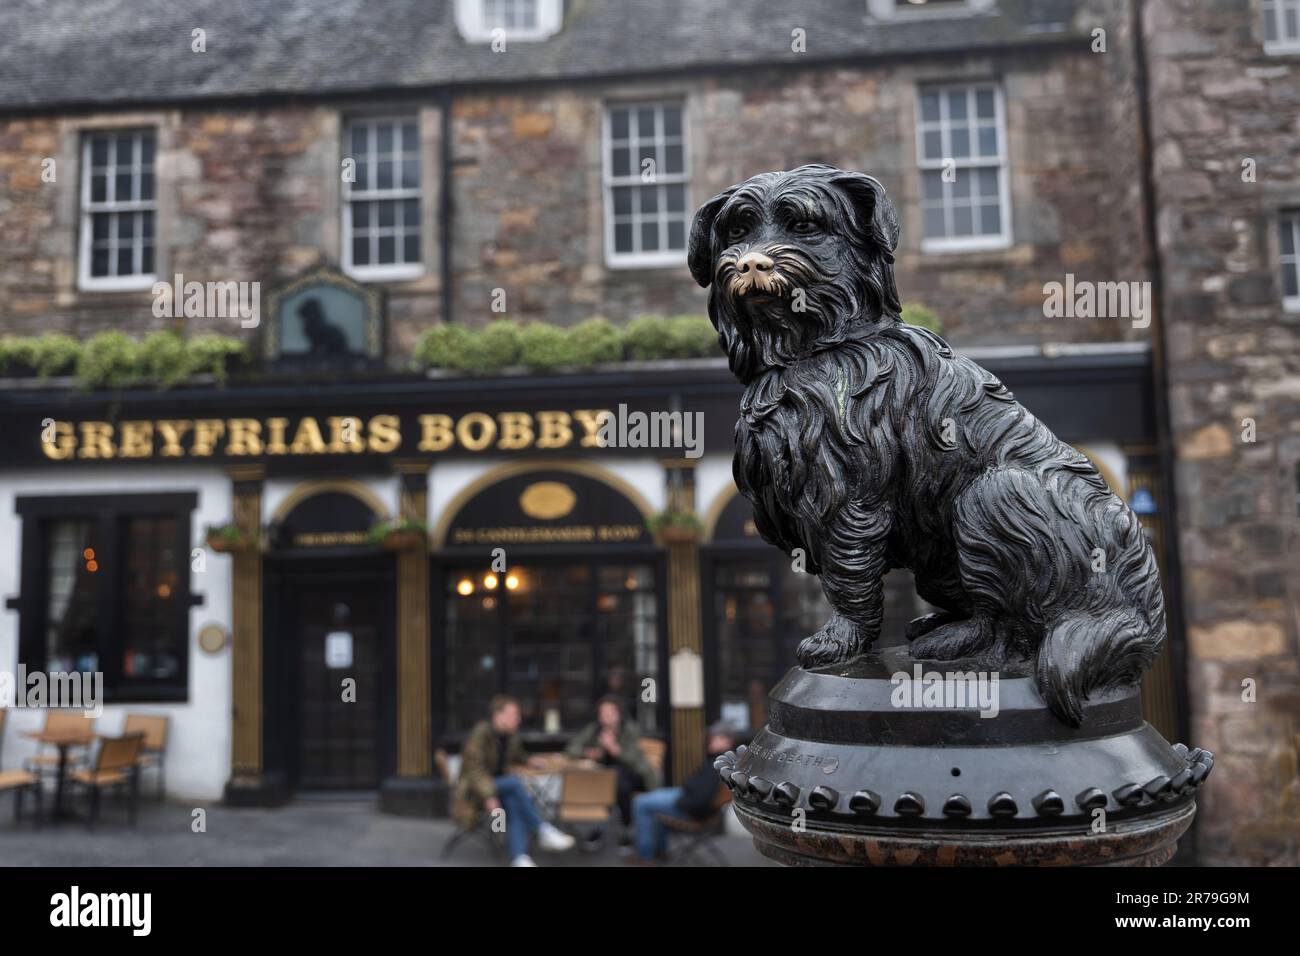 Die Greyfriars Bobby Statue und Bar in Edinburgh, Schottland. Bronzeskulptur für einen treuen Hund, der lange Jahre an seinem Meistergrab verbracht hat Stockfoto